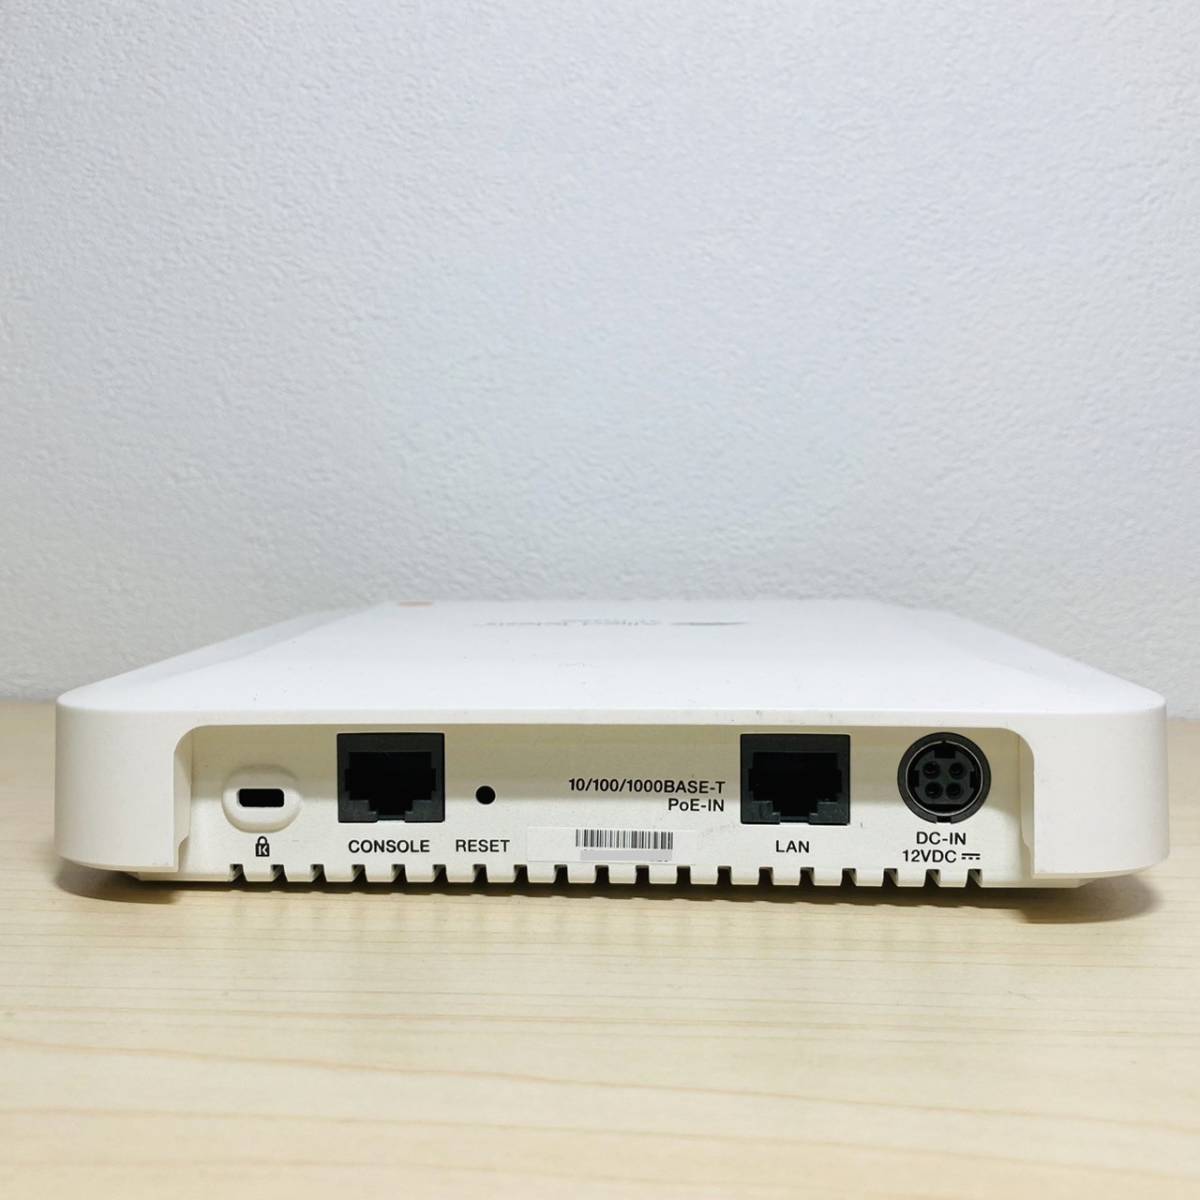 132【通電OK】 Allied Telesis AT-TQ4400 無線 LAN アクセスポイント AP ホワイト 白 Wi-Fi インターネット ルーター アライドテレシス_画像4